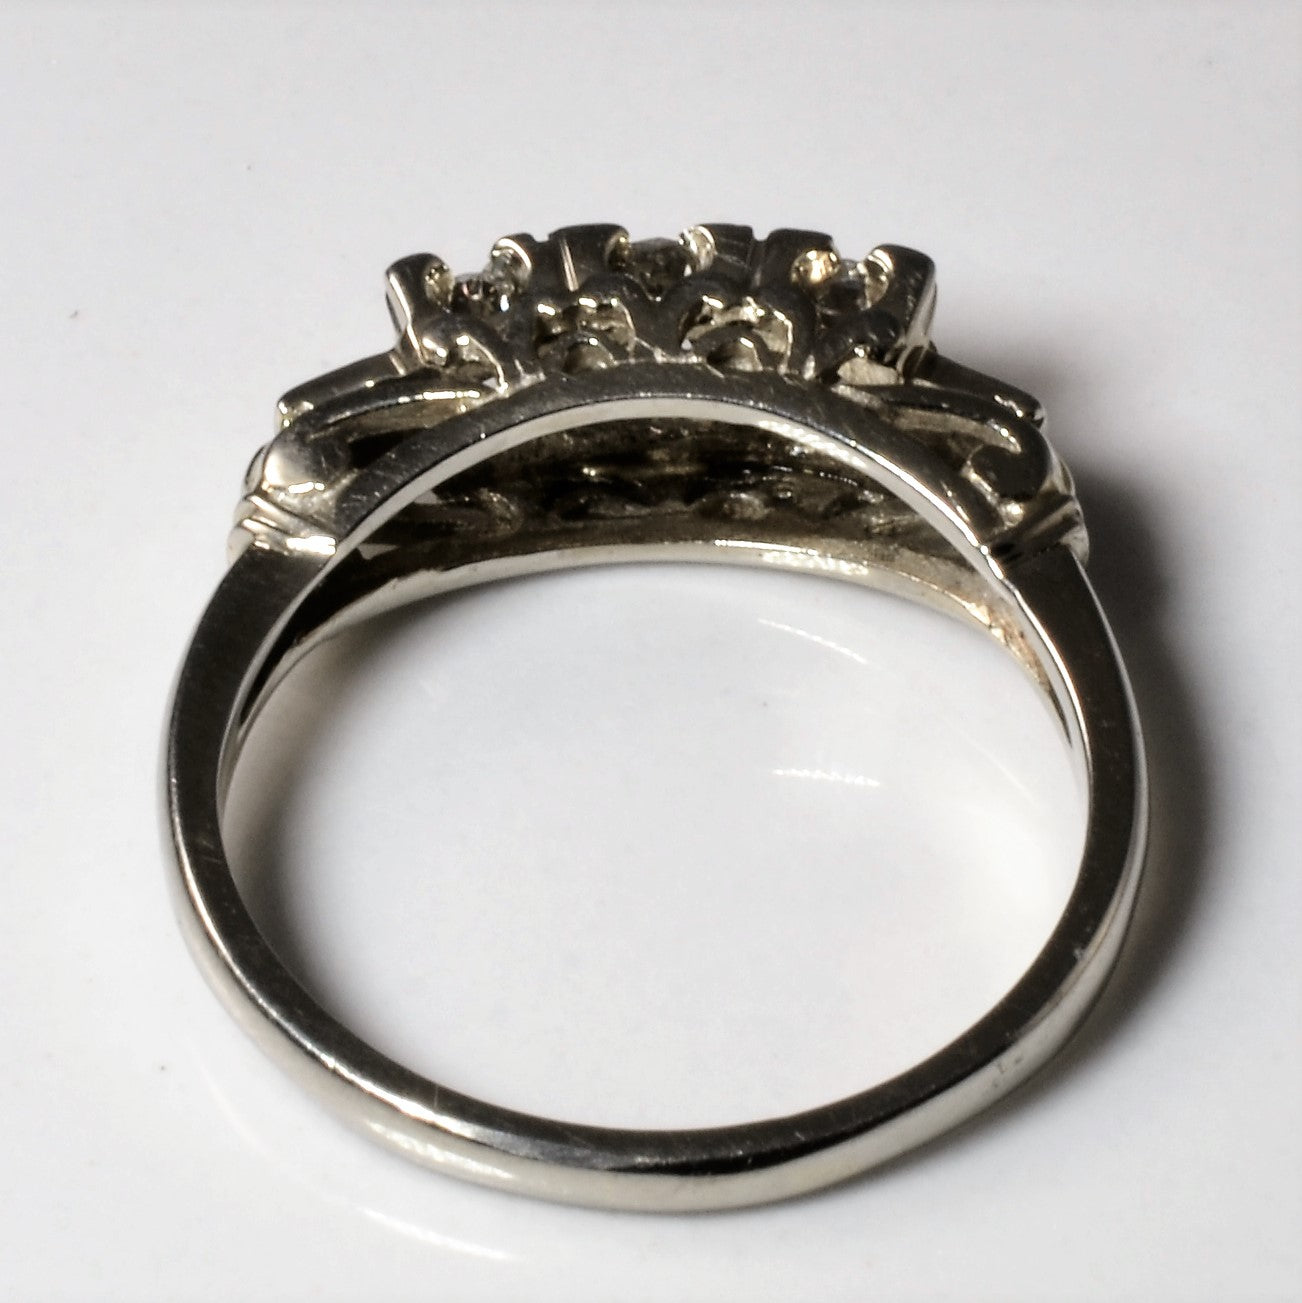 Old European Three Stone Diamond Ring | 0.51ctw | SZ 7.5 |